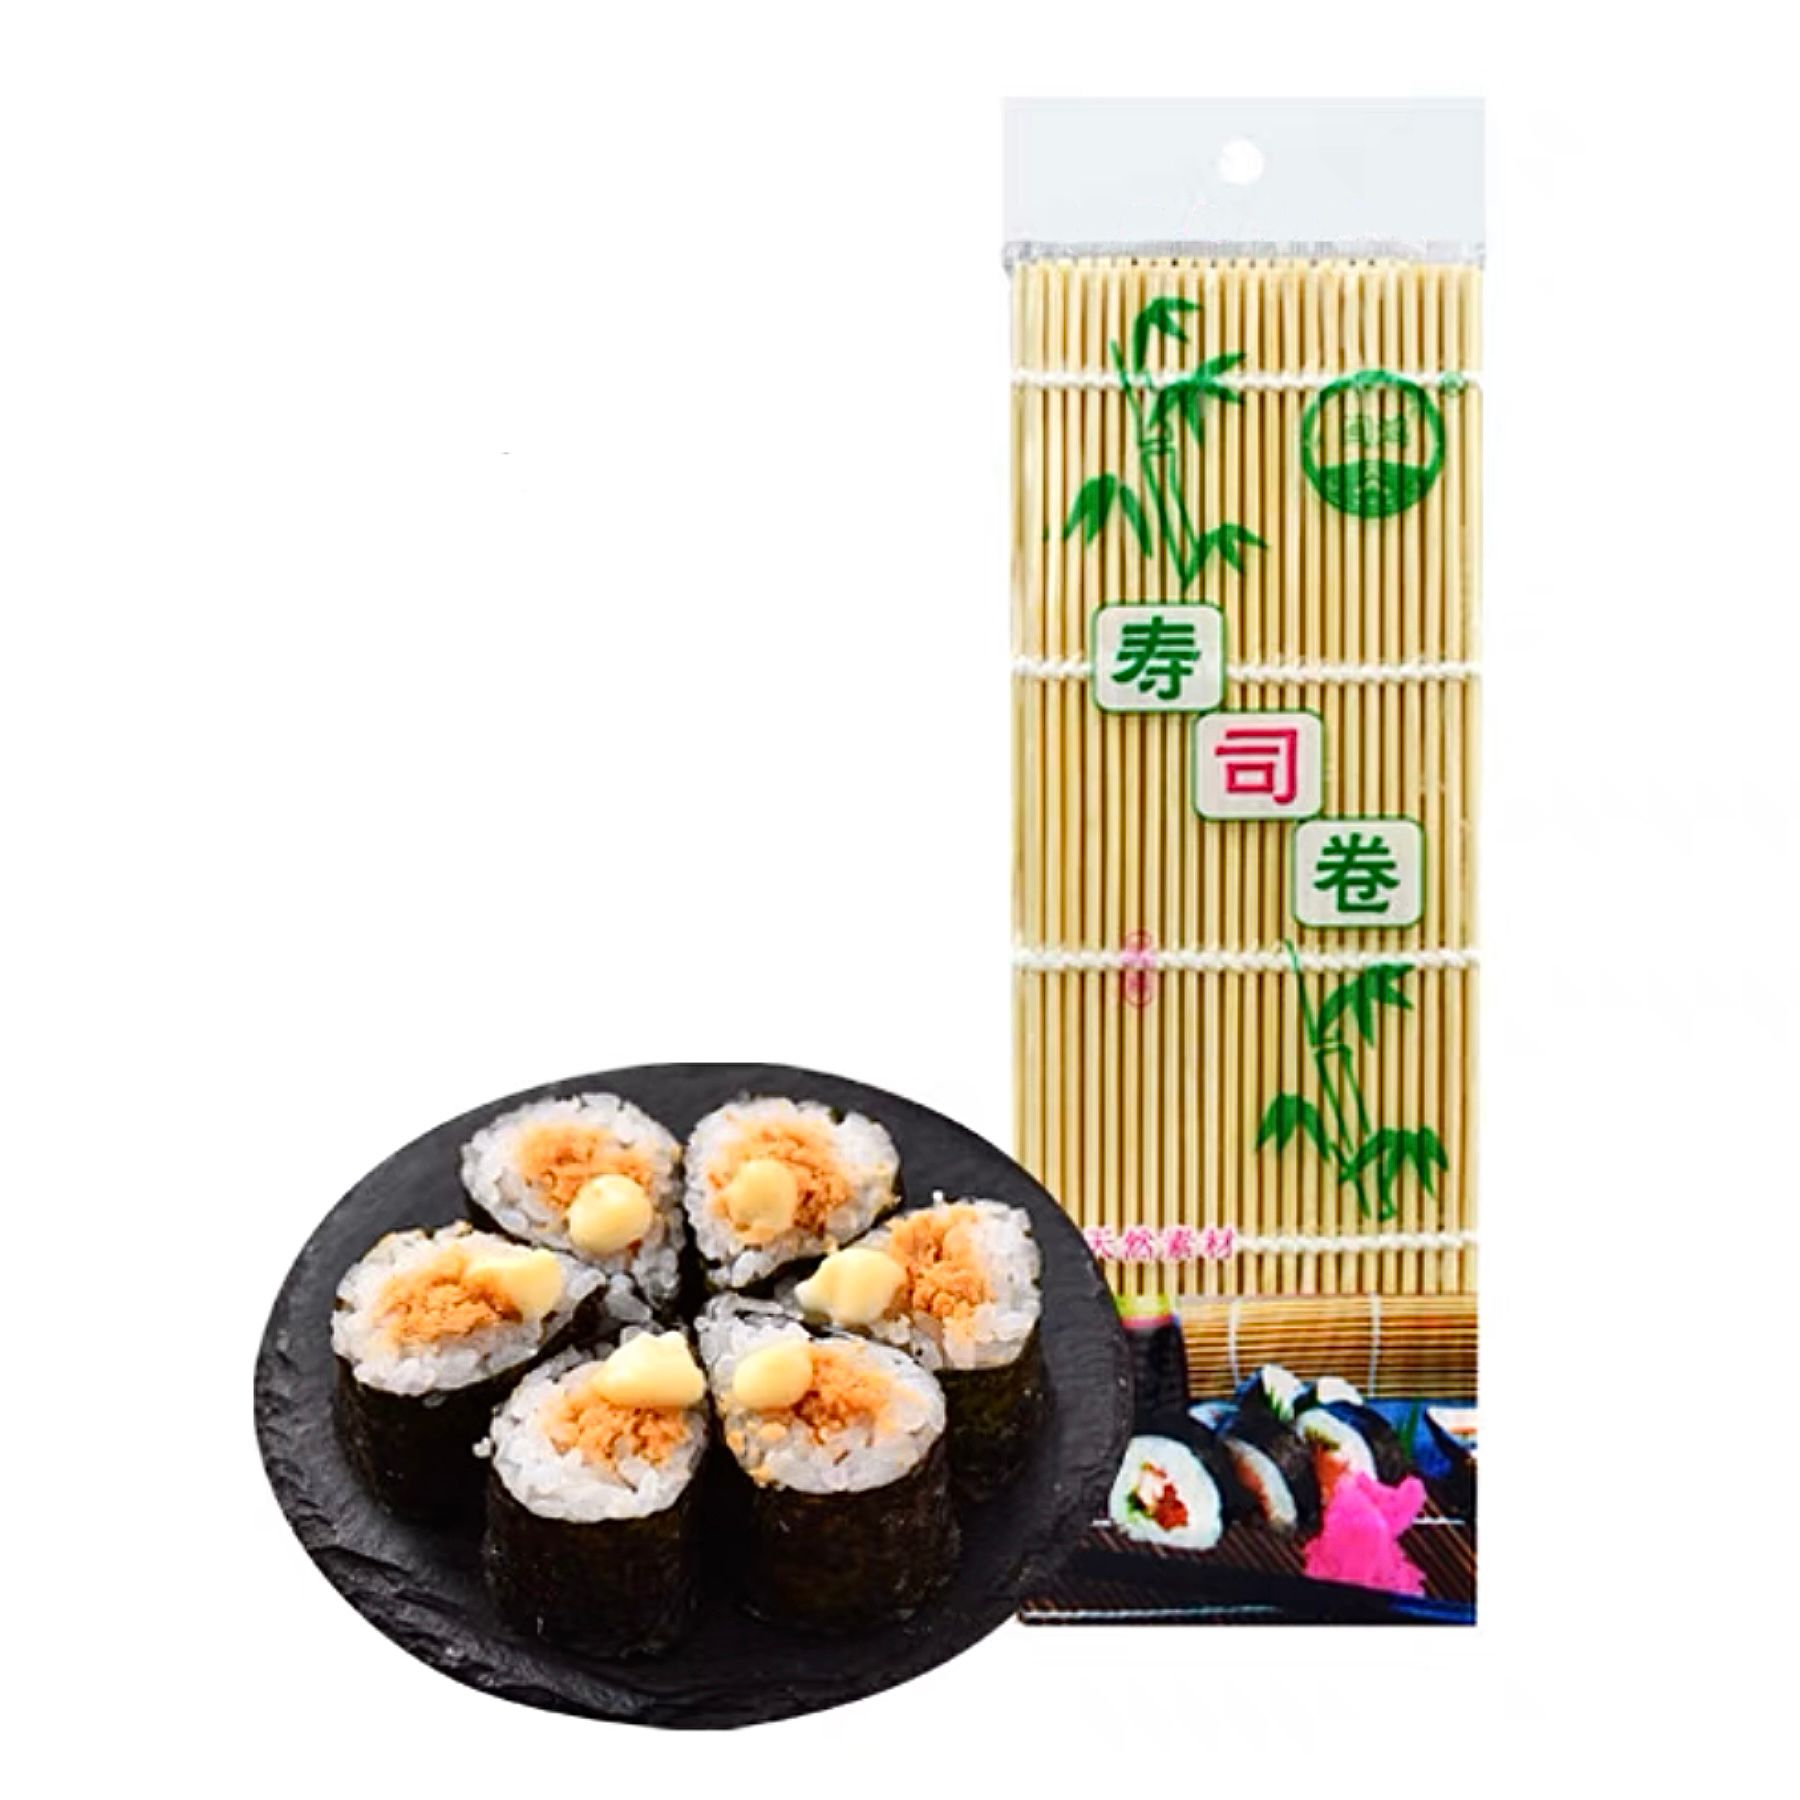 Bambusrolle für Sushi 24x24cm